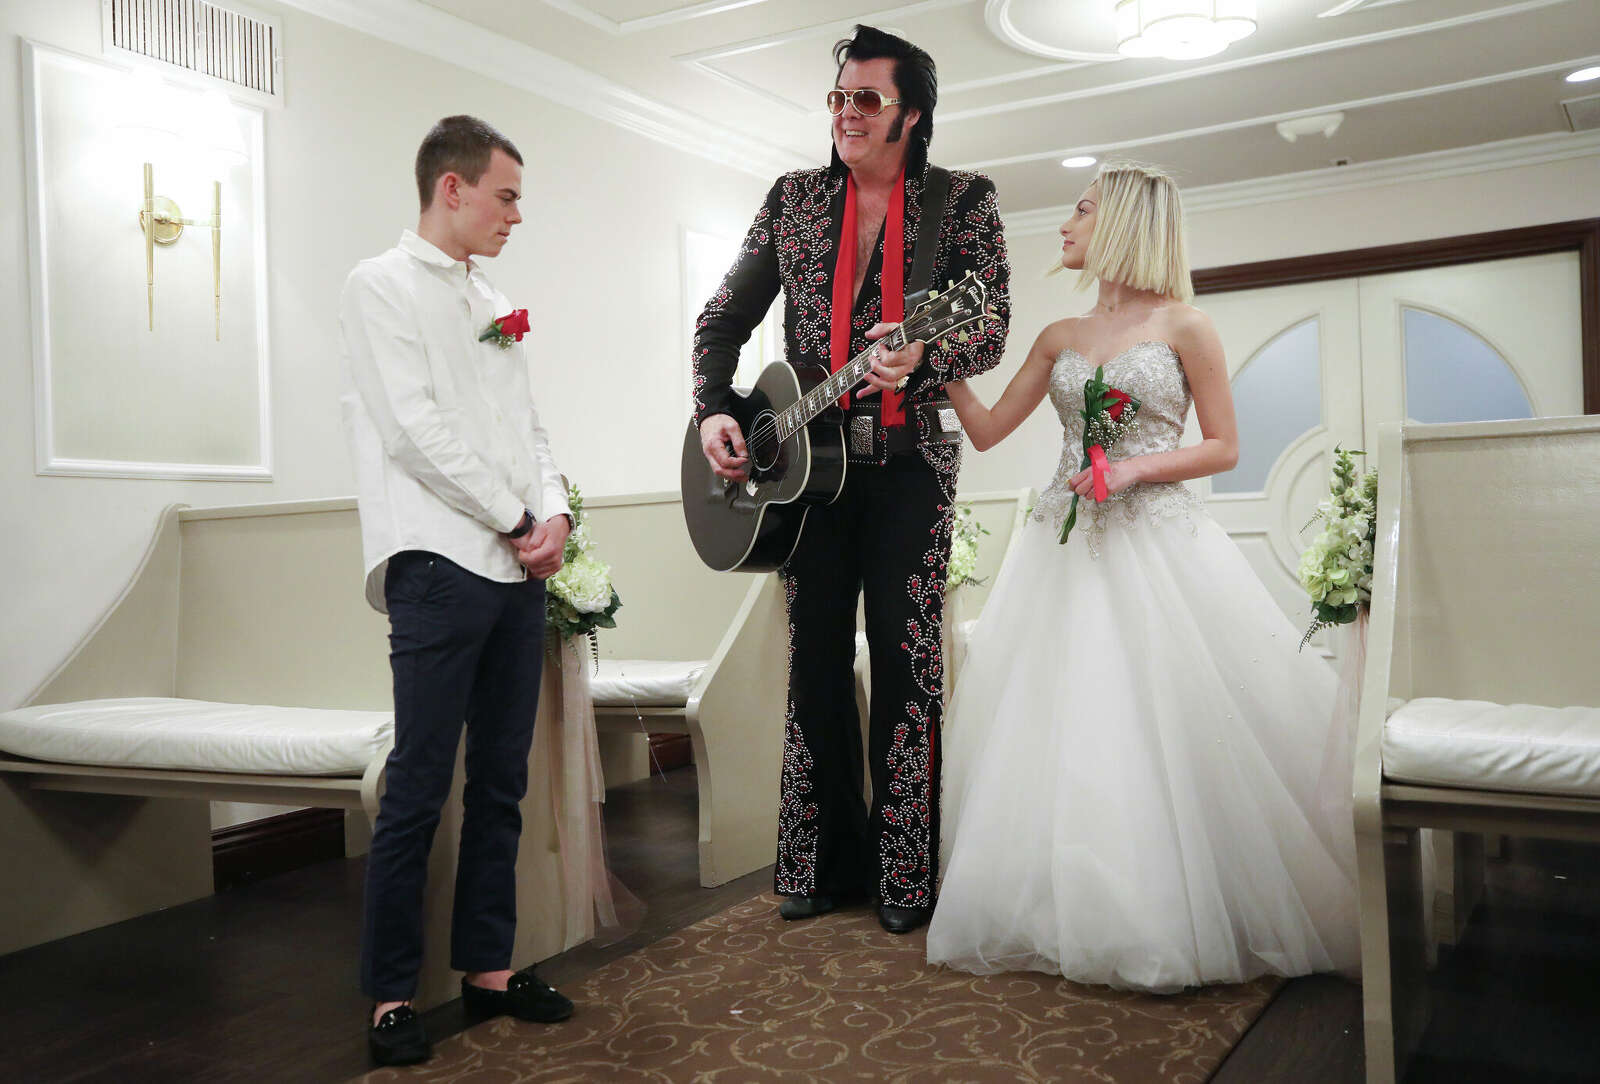 No more Elvis weddings